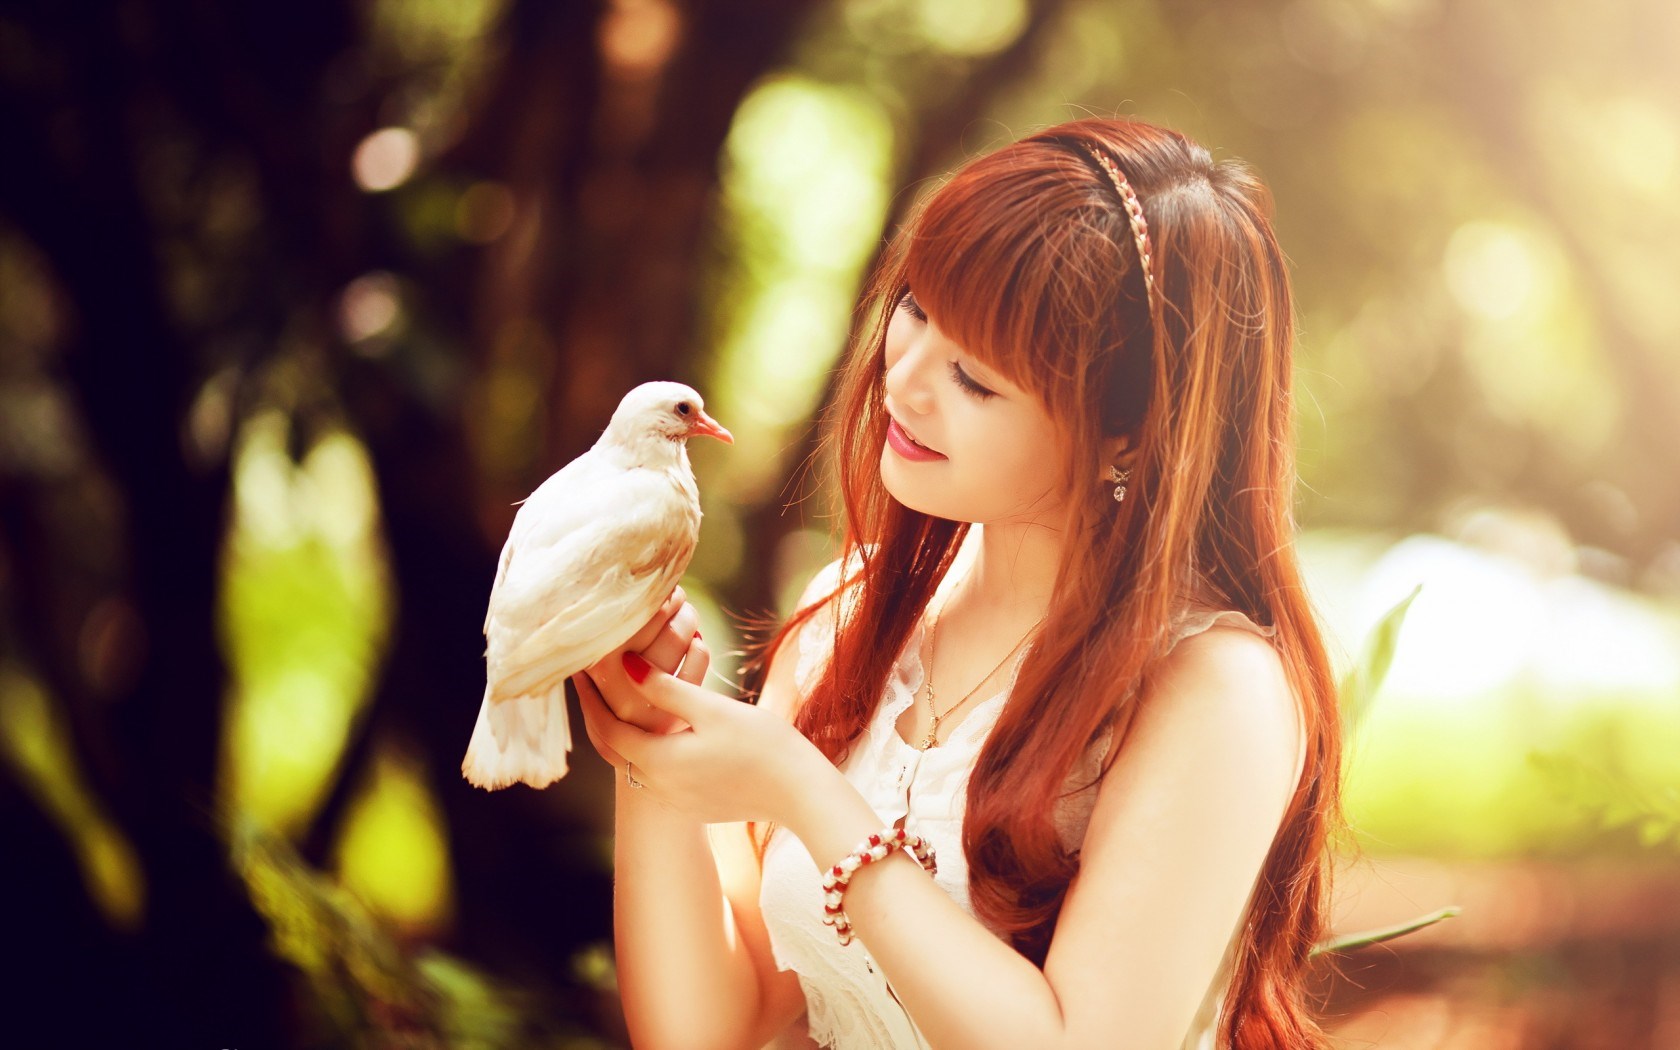 دختر آسیایی پرنده سفید